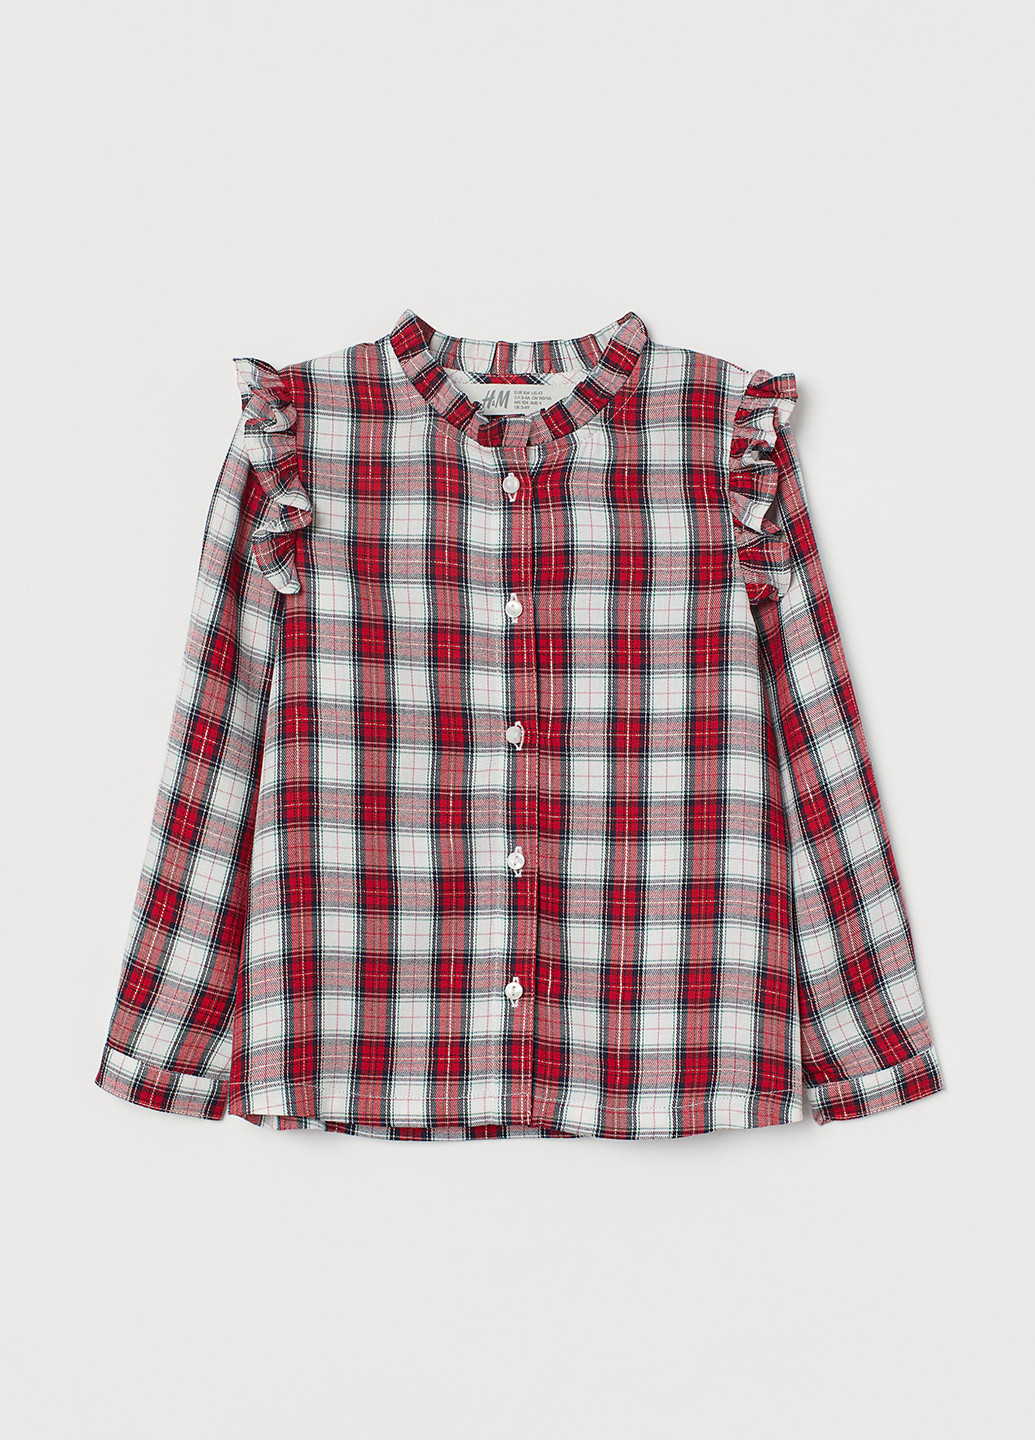 Красная в клетку блузка H&M демисезонная